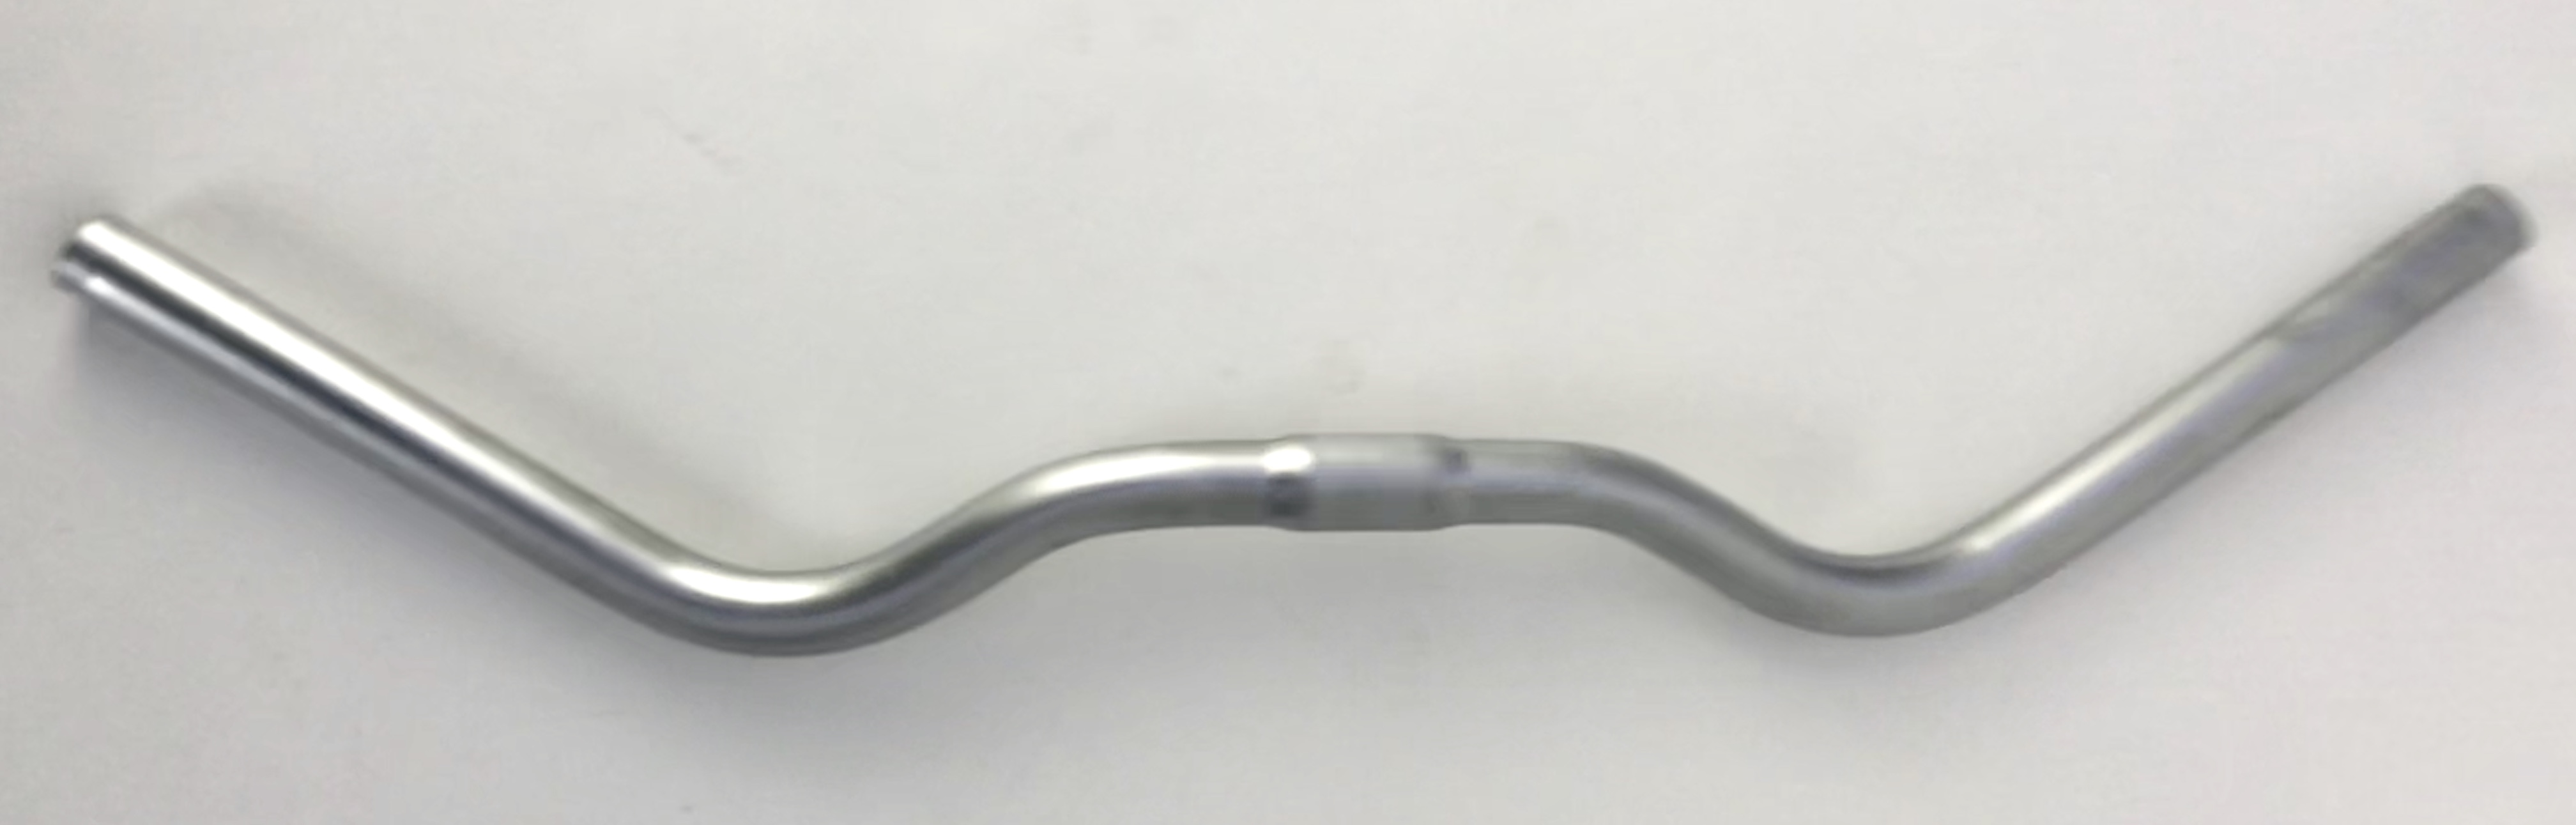 Manubrio Boardtracker, 630 mm in color argento simil alluminio